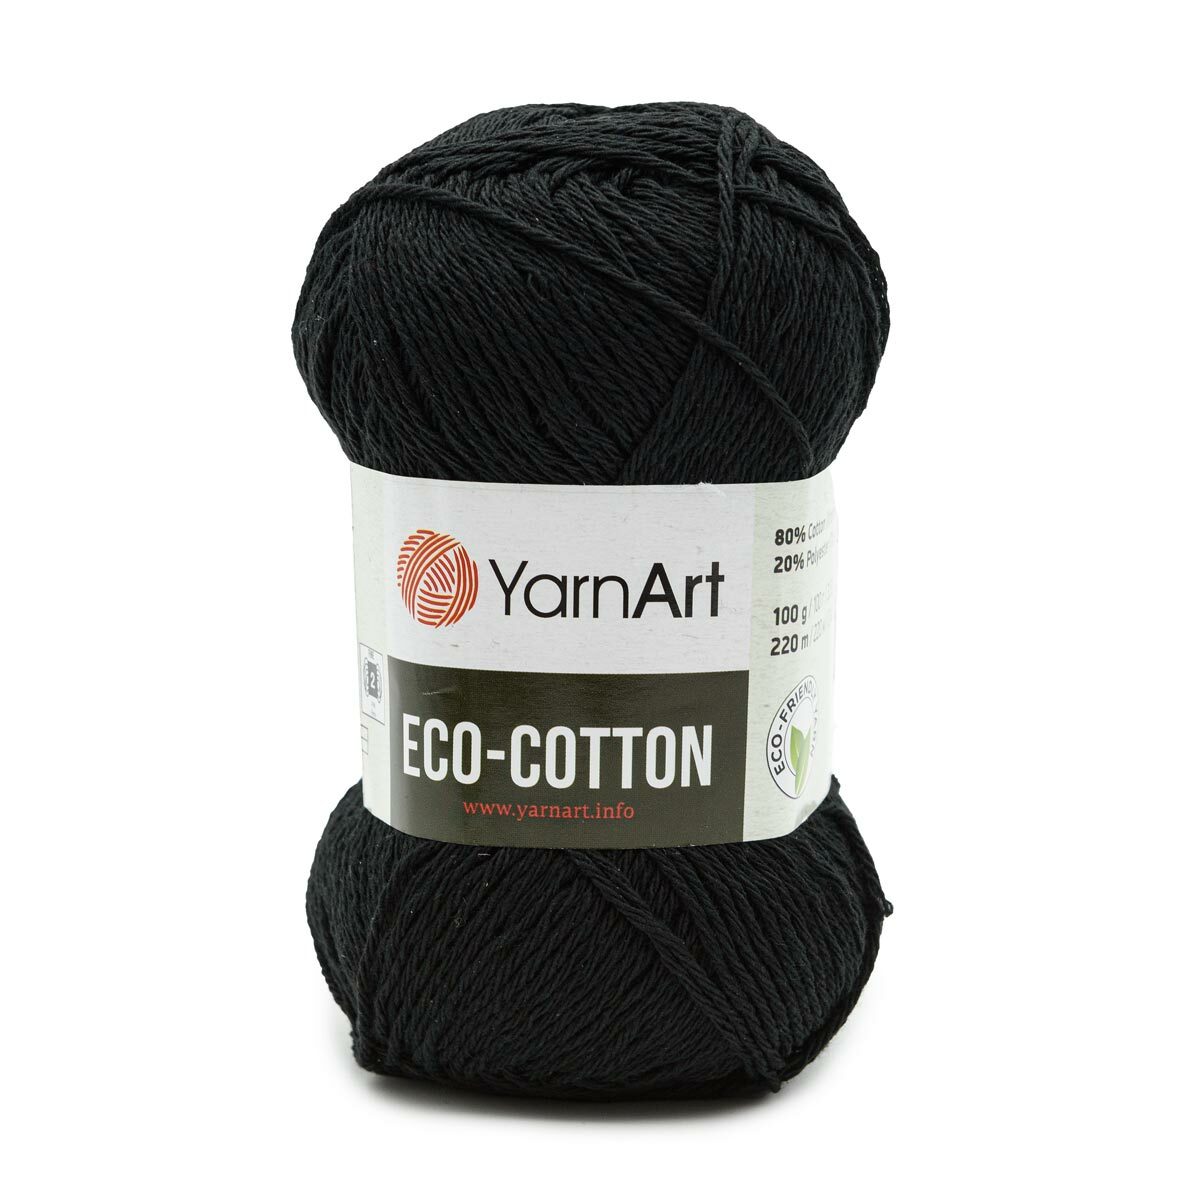 Купить Пряжа YarnArt Eco Cotton 100гр 220м (80% хлопок, 20% полиэстер),цена, фото, описание - в Санкт-Петербурге в интернет-магазине Искусница